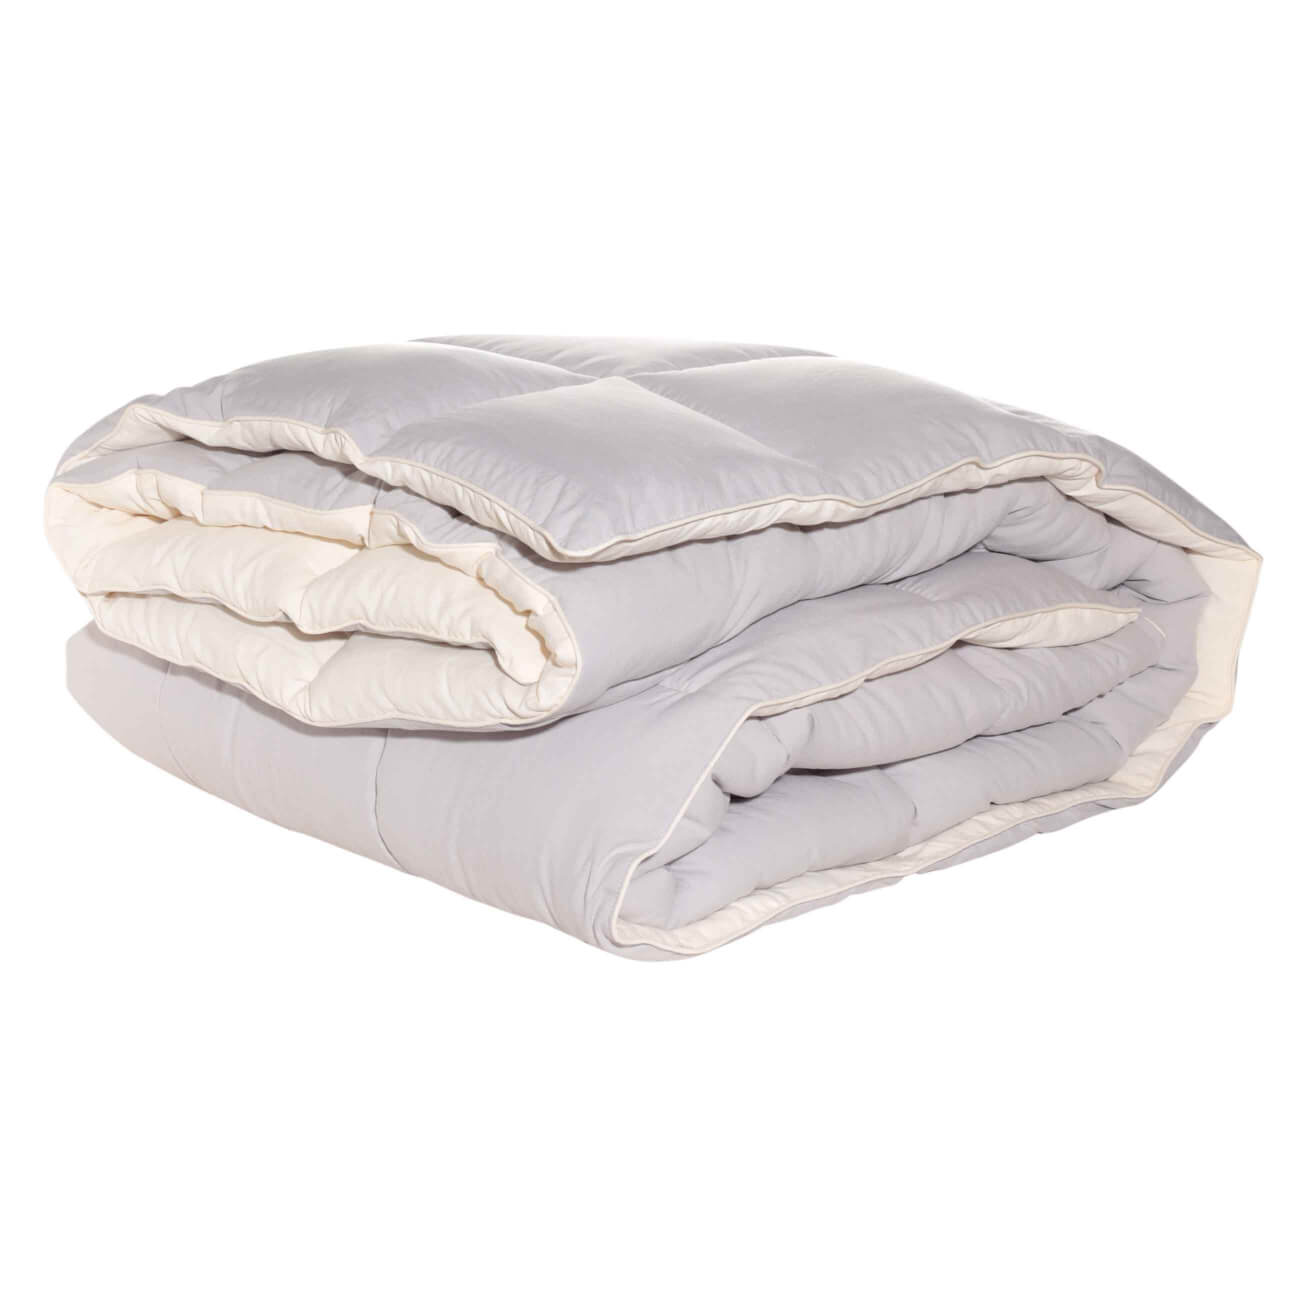 Одеяло, 200х220 см, микрофибра/холлофайбер, бежевое/молочное, Hollow fiber одеяло верблюжья шерсть оригинал облегченное р 200х220